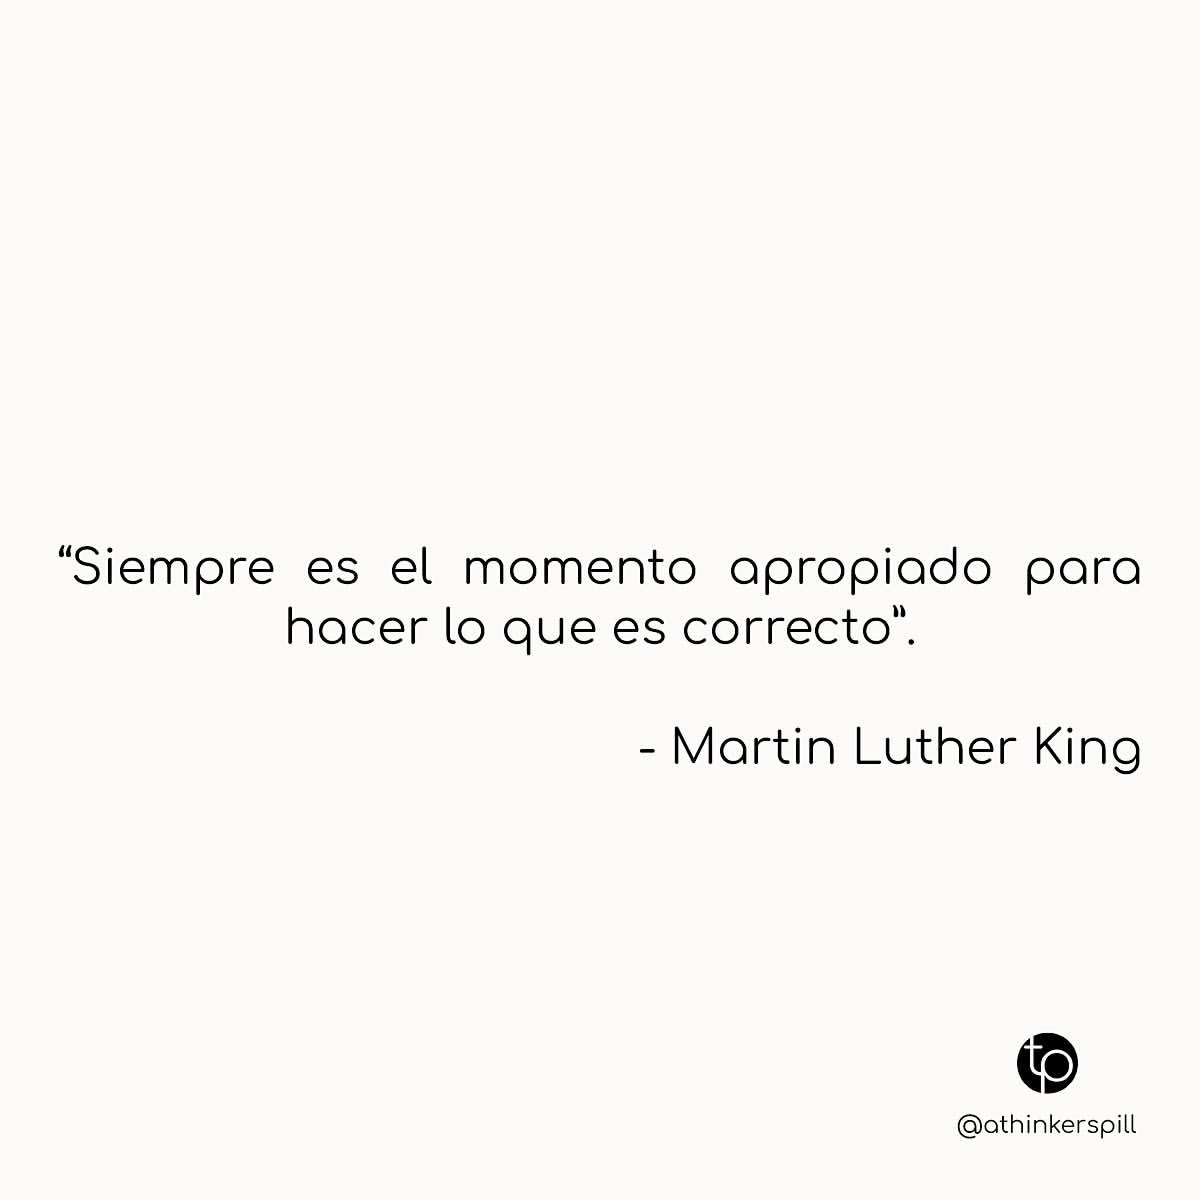 "Siempre es el momento apropiado para hacer lo que es correcto". Martin Luther King.